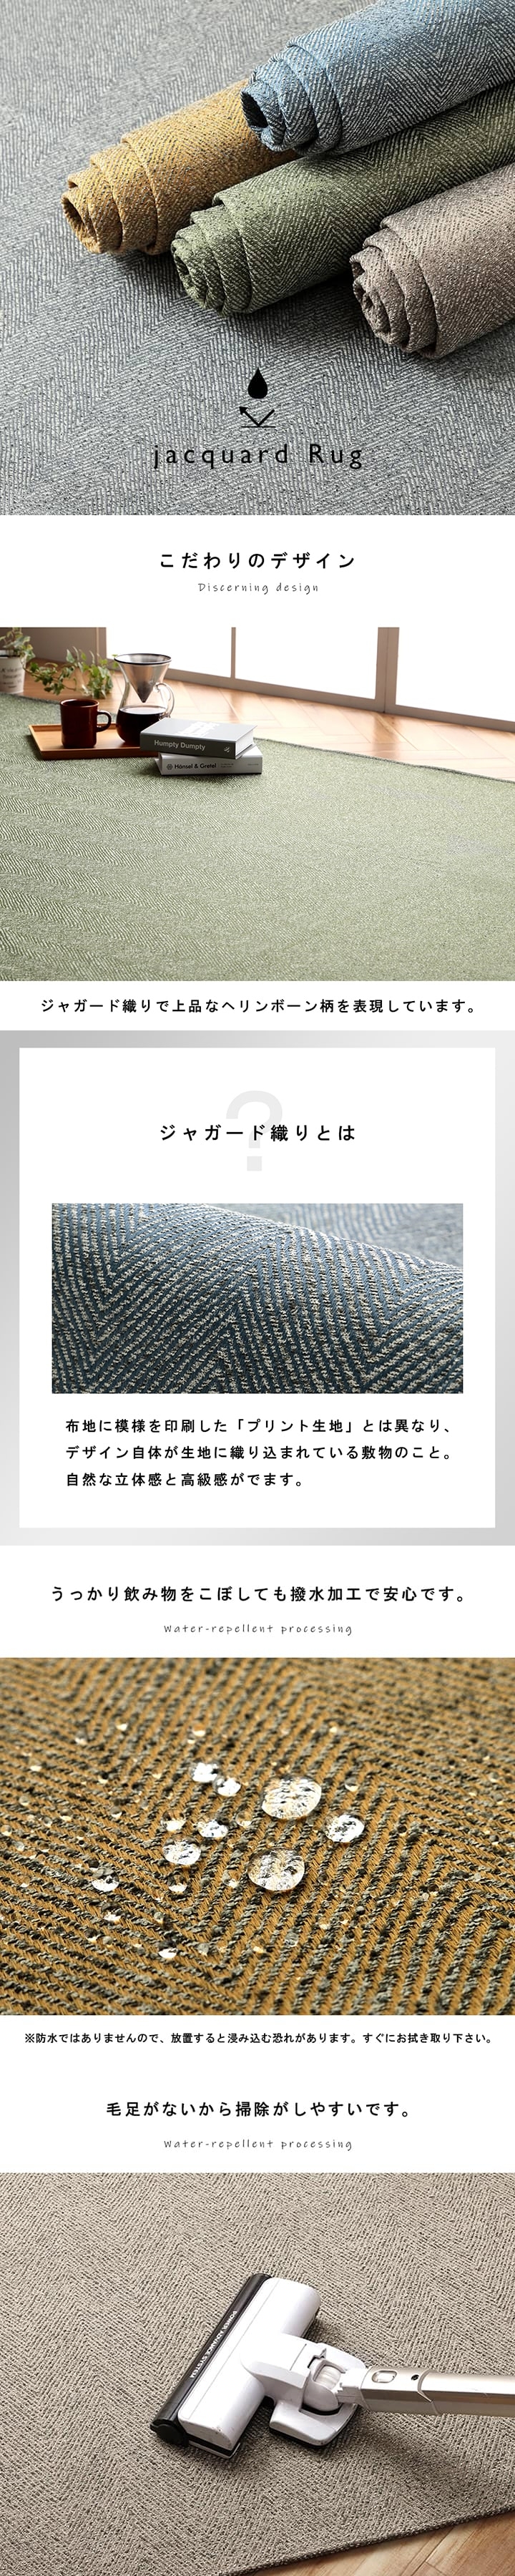 ジャガード織でヘリンボーン柄を表現したシンプルなラグ 90×185cm